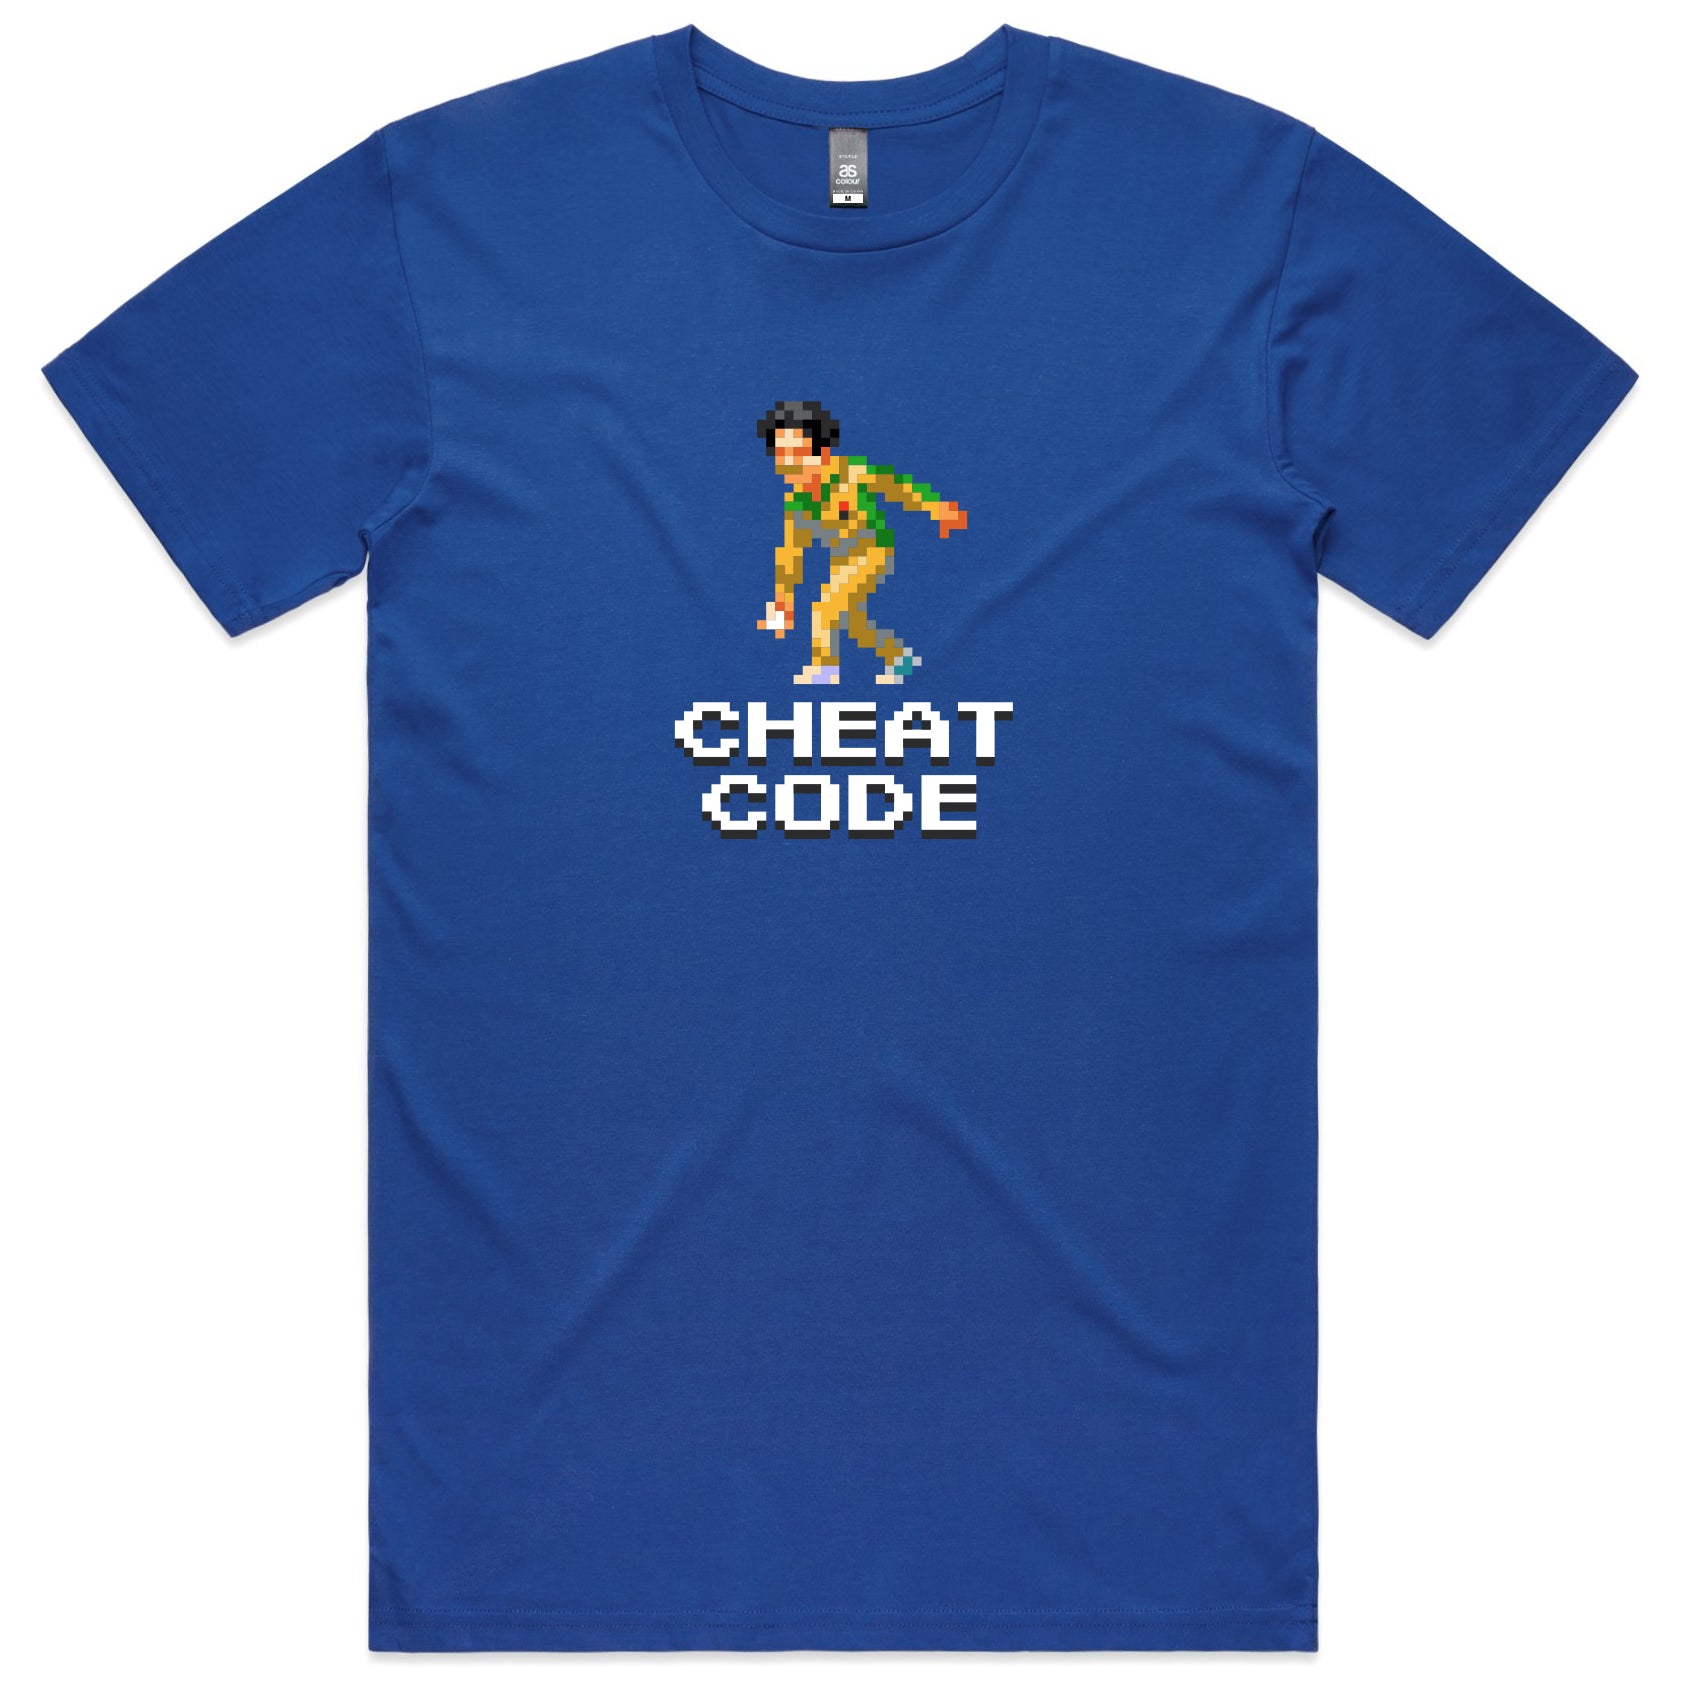 Cheat Code cricket blue t-shirt mens